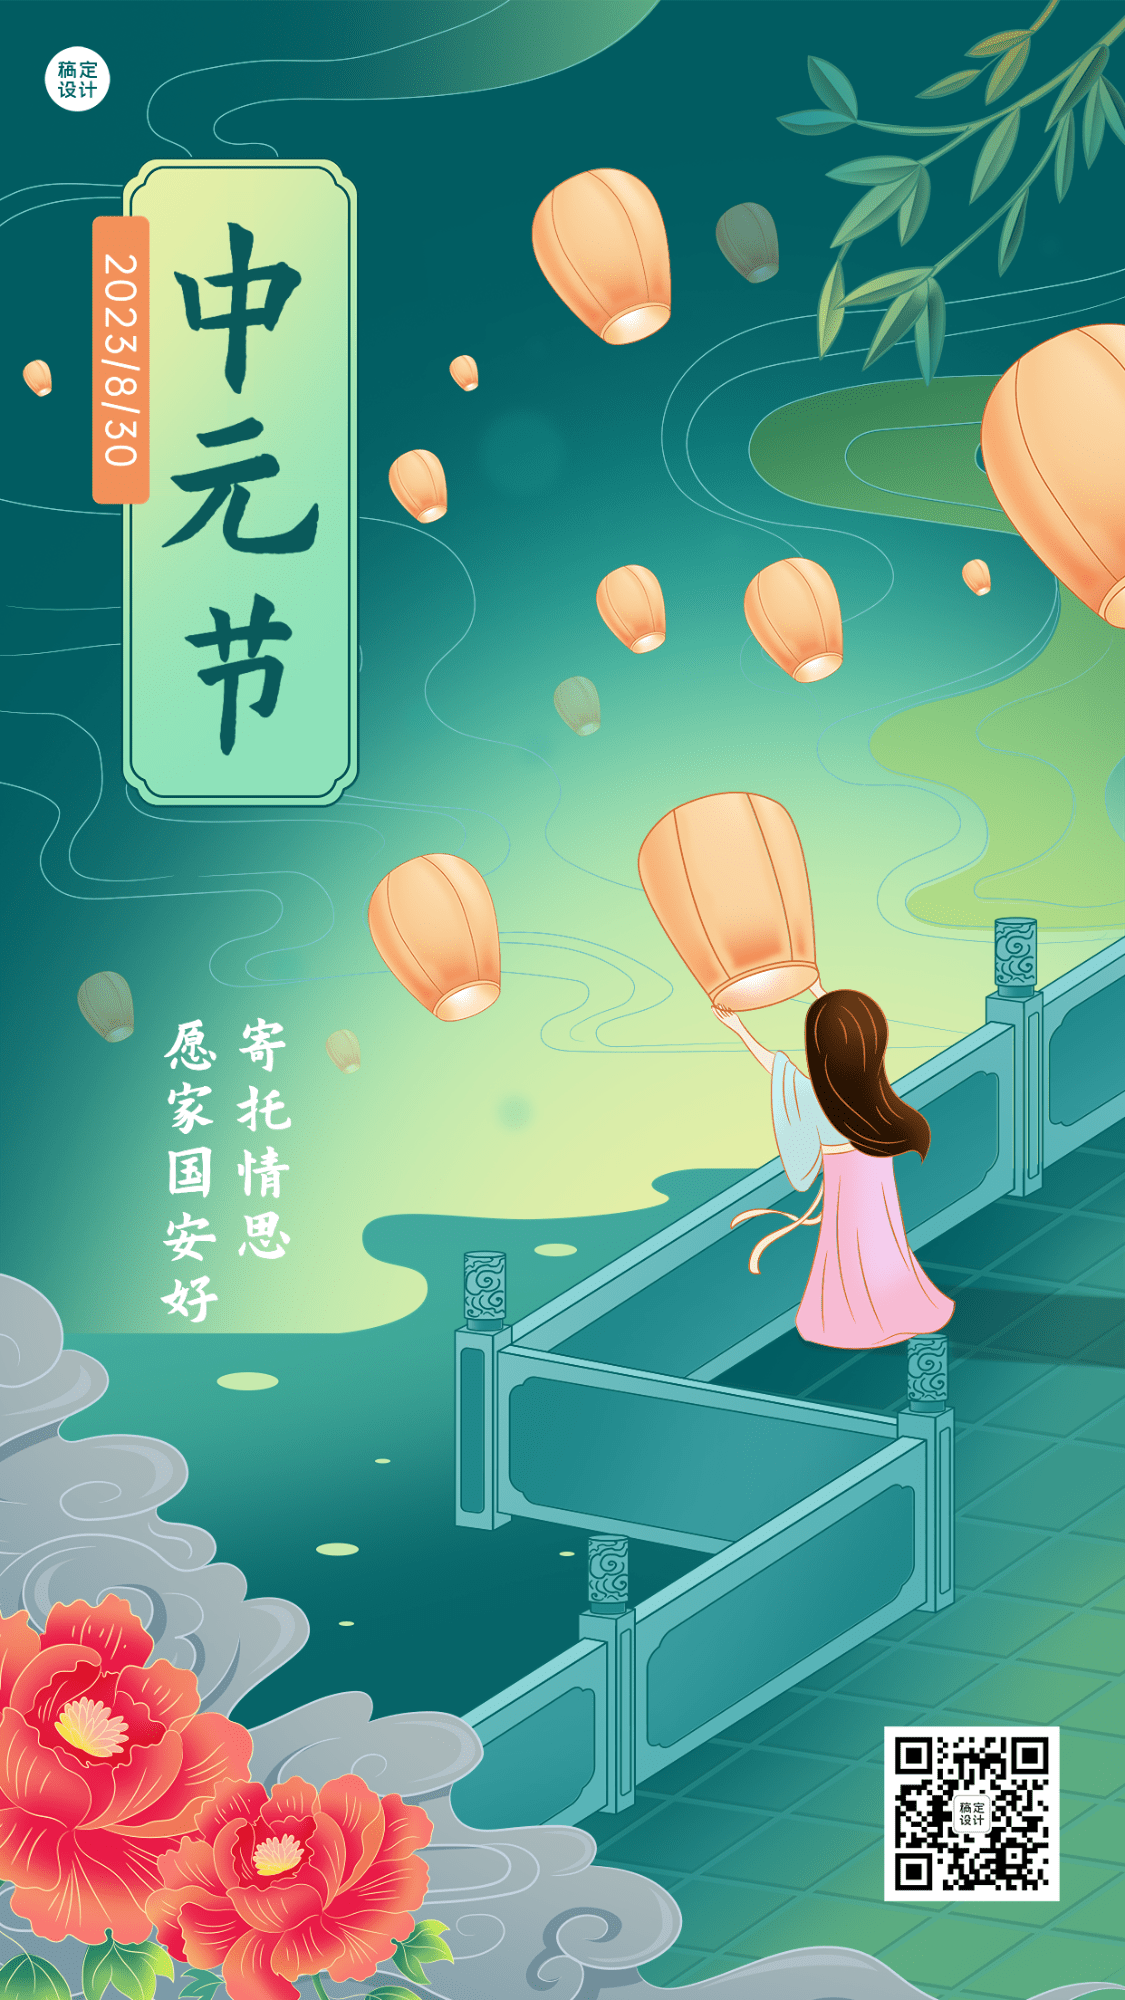 中元节节日祝福插画手机海报